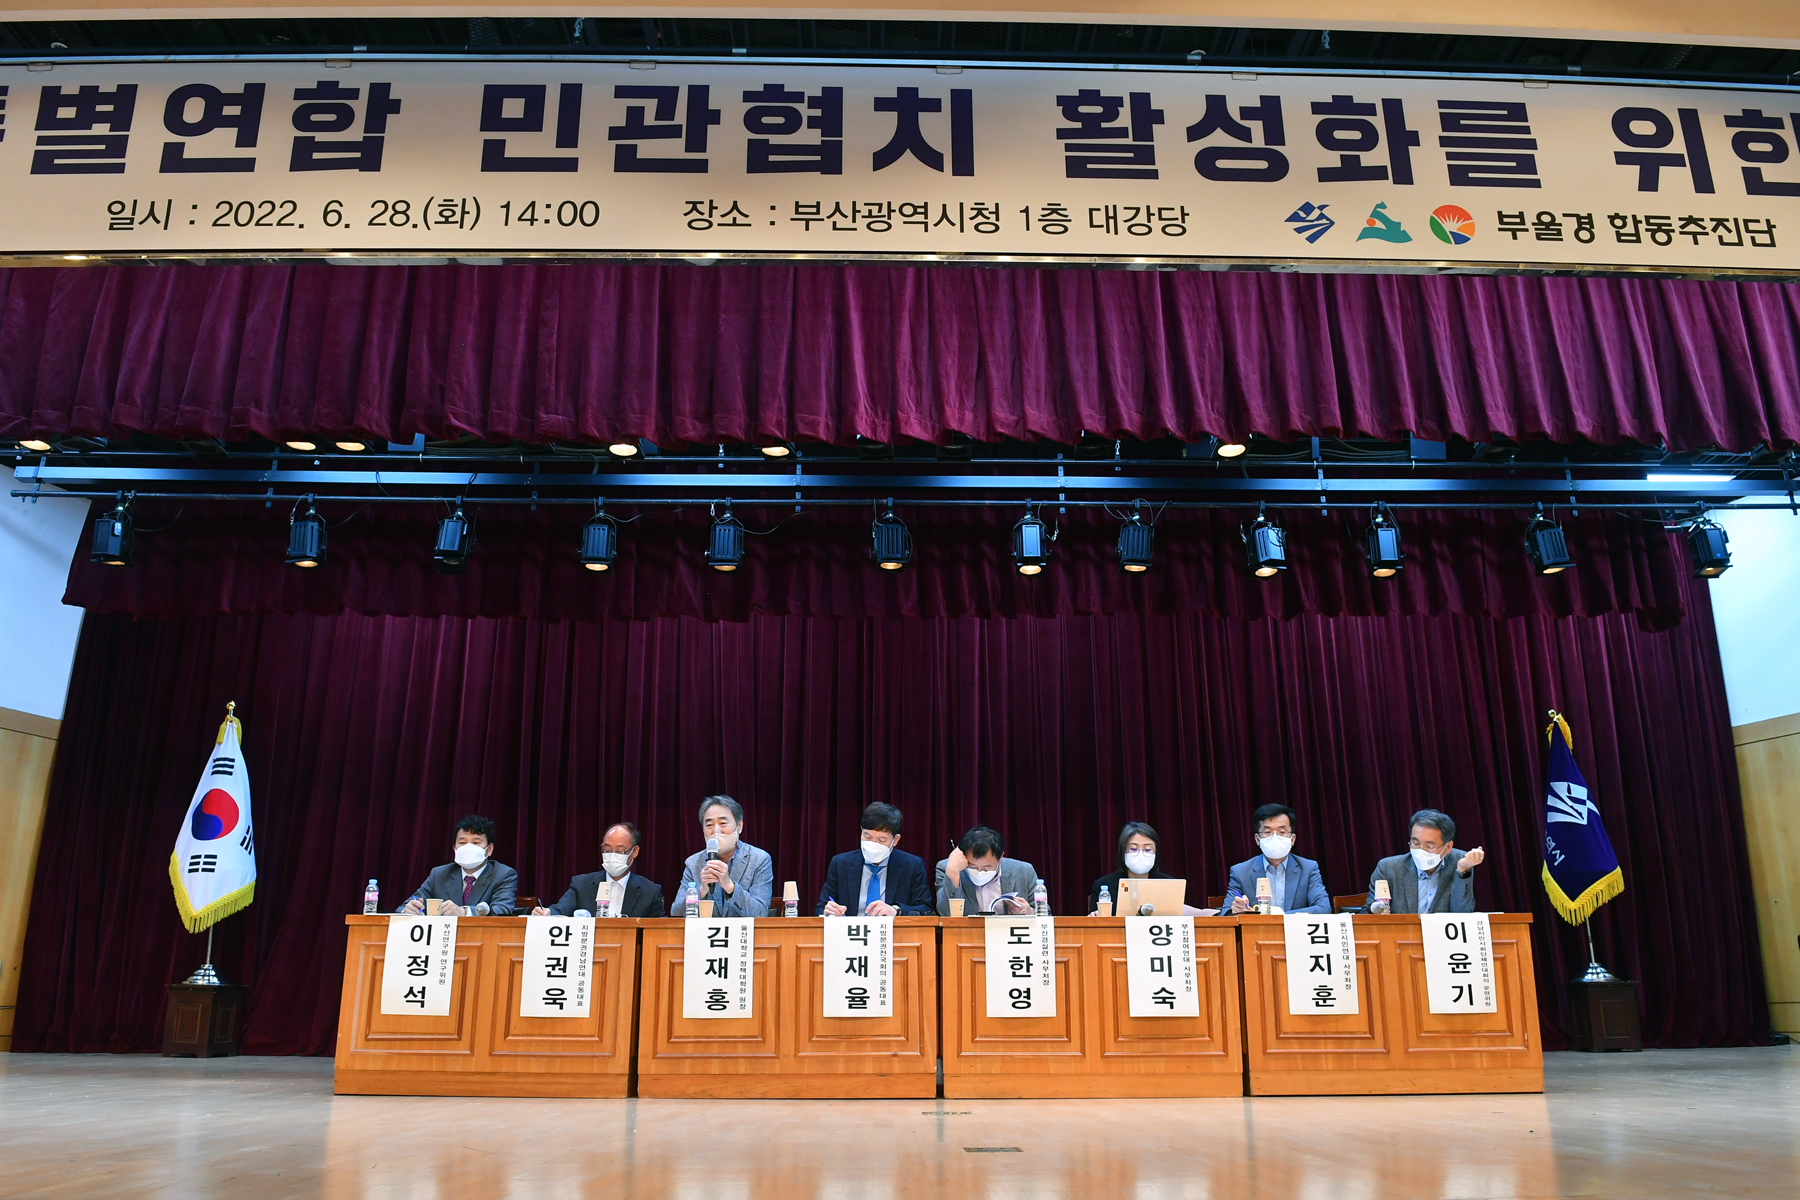 20220628 부울경특별연합 민관협치 활성화를 위한 시민포럼 개최(대강당)  사진5